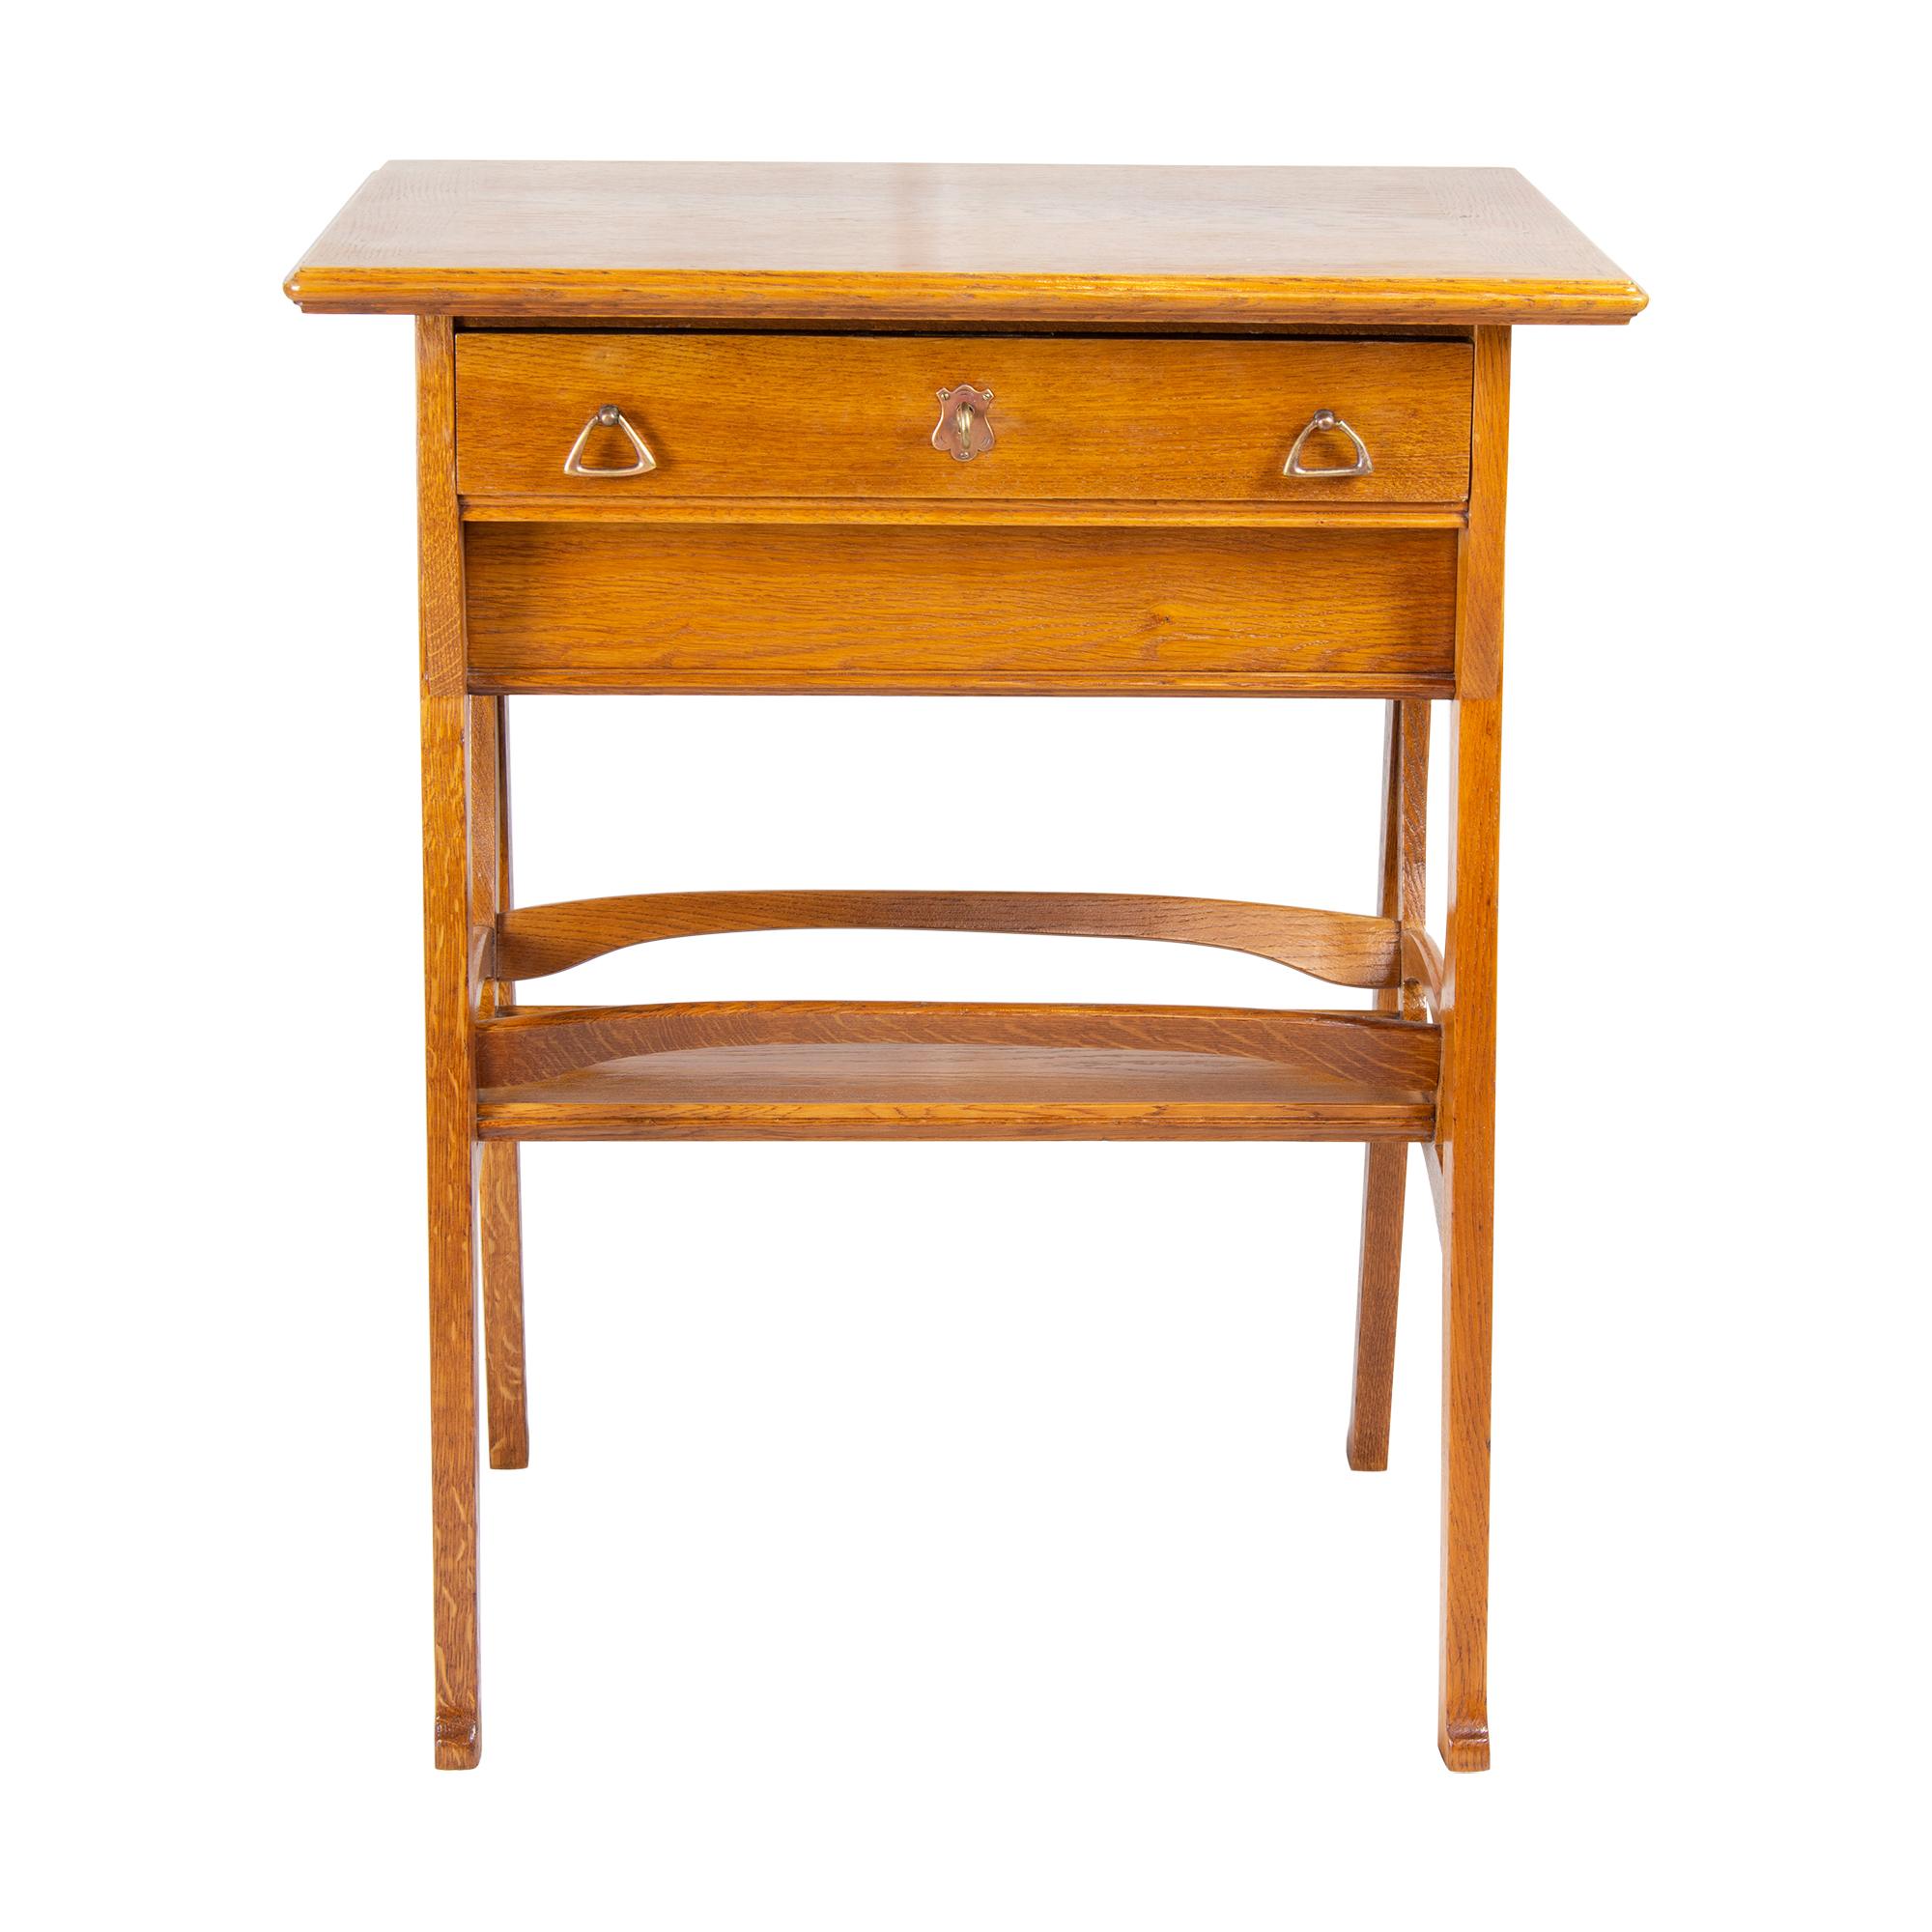 Schöner Näh- oder Beistelltisch aus Eichenholz. Der Tisch stammt aus der Zeit des Jugendstils, genauer gesagt aus der Zeit, um 1905. Der Tisch hat ein sehr schönes Jugendstildesign. Die untere Schublade kann in beide Richtungen geöffnet werden. In